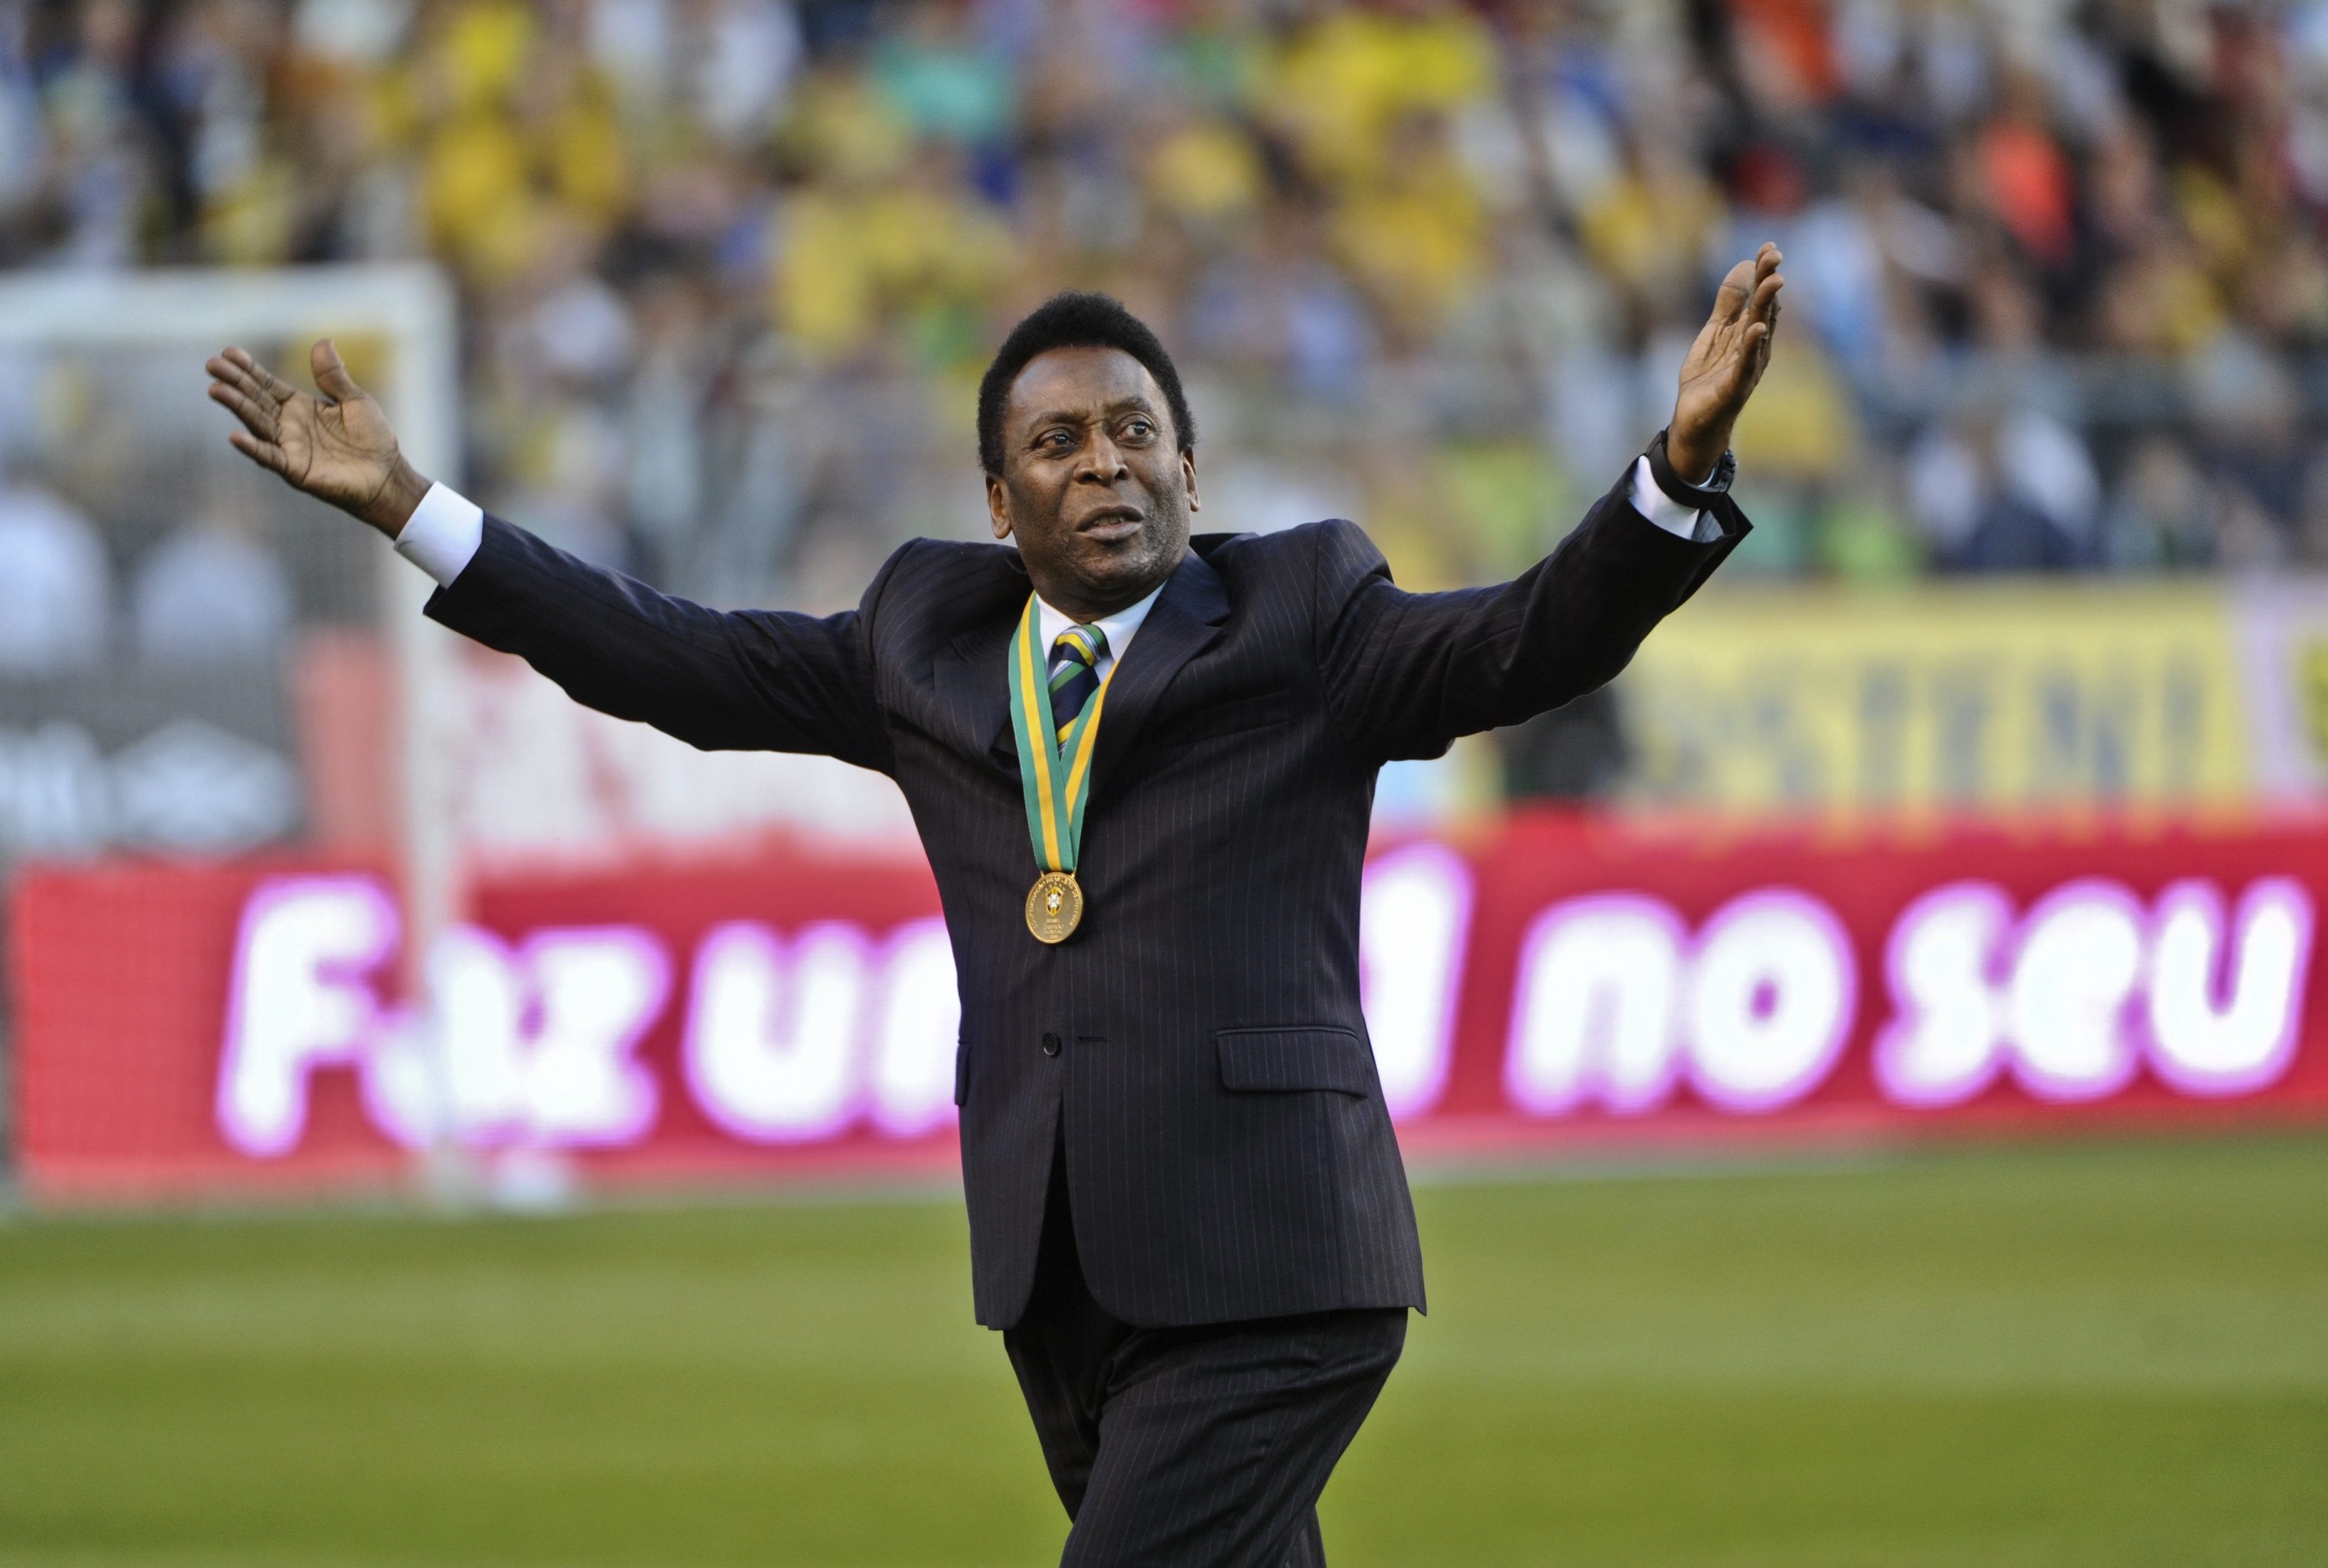 Pelé está pasando por un momento difícil en su carrera. (Foto Prensa Libre: Hemeroteca PL)